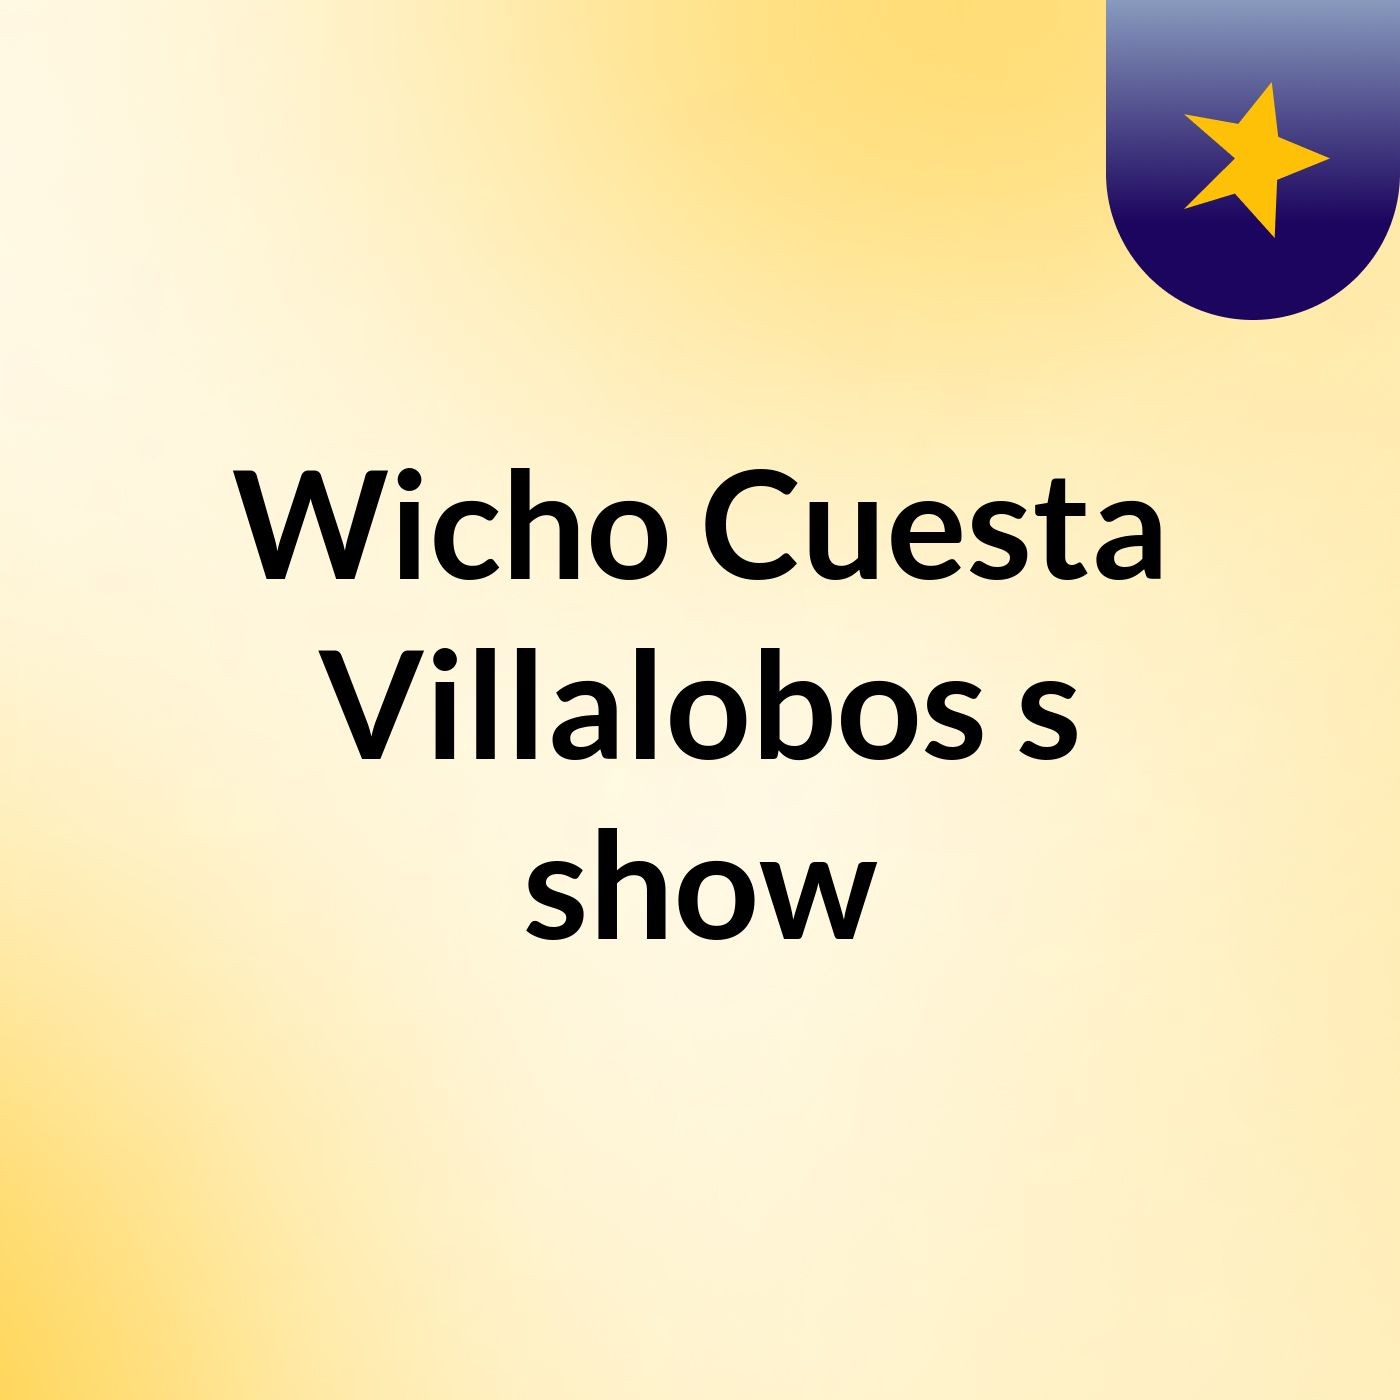 Wicho Cuesta Villalobos's show